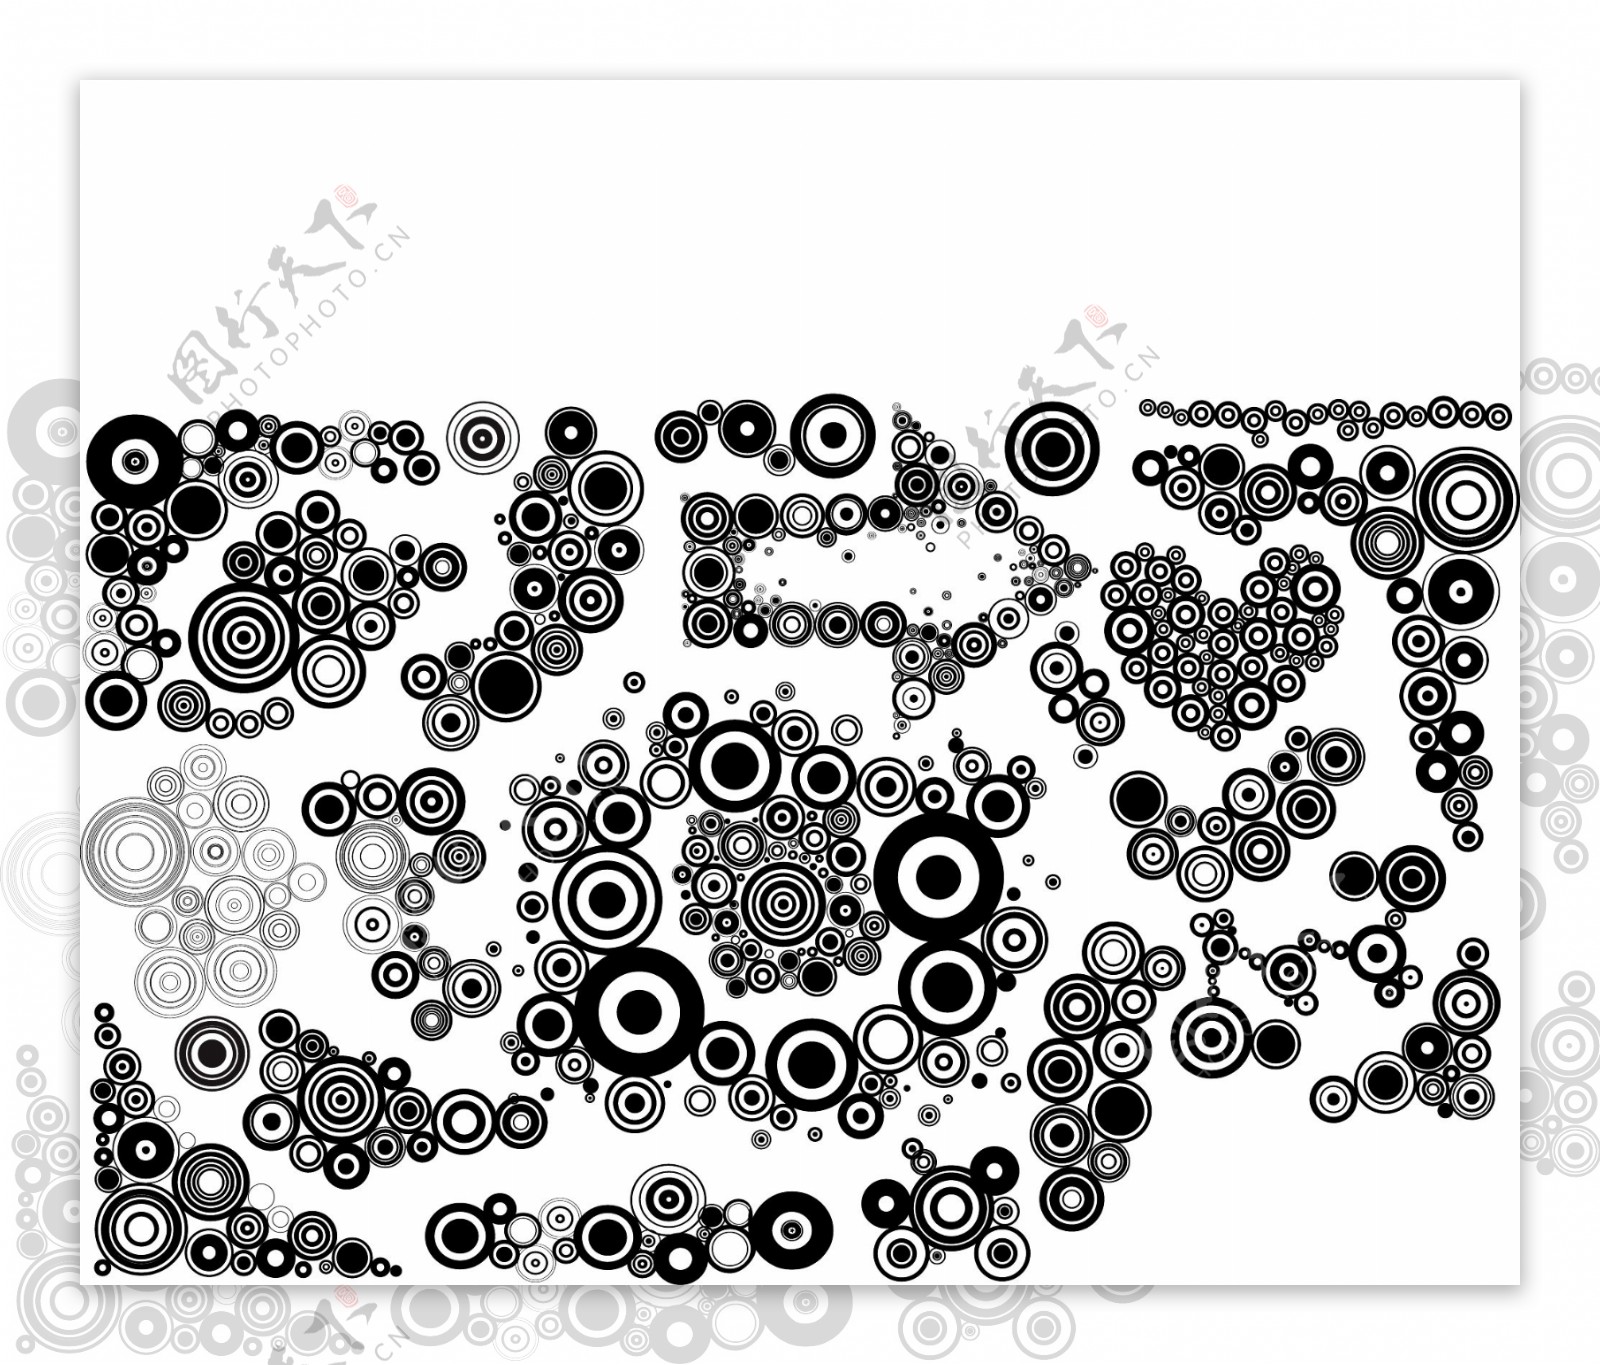 黑白设计元素系列矢量素材10圆形图形